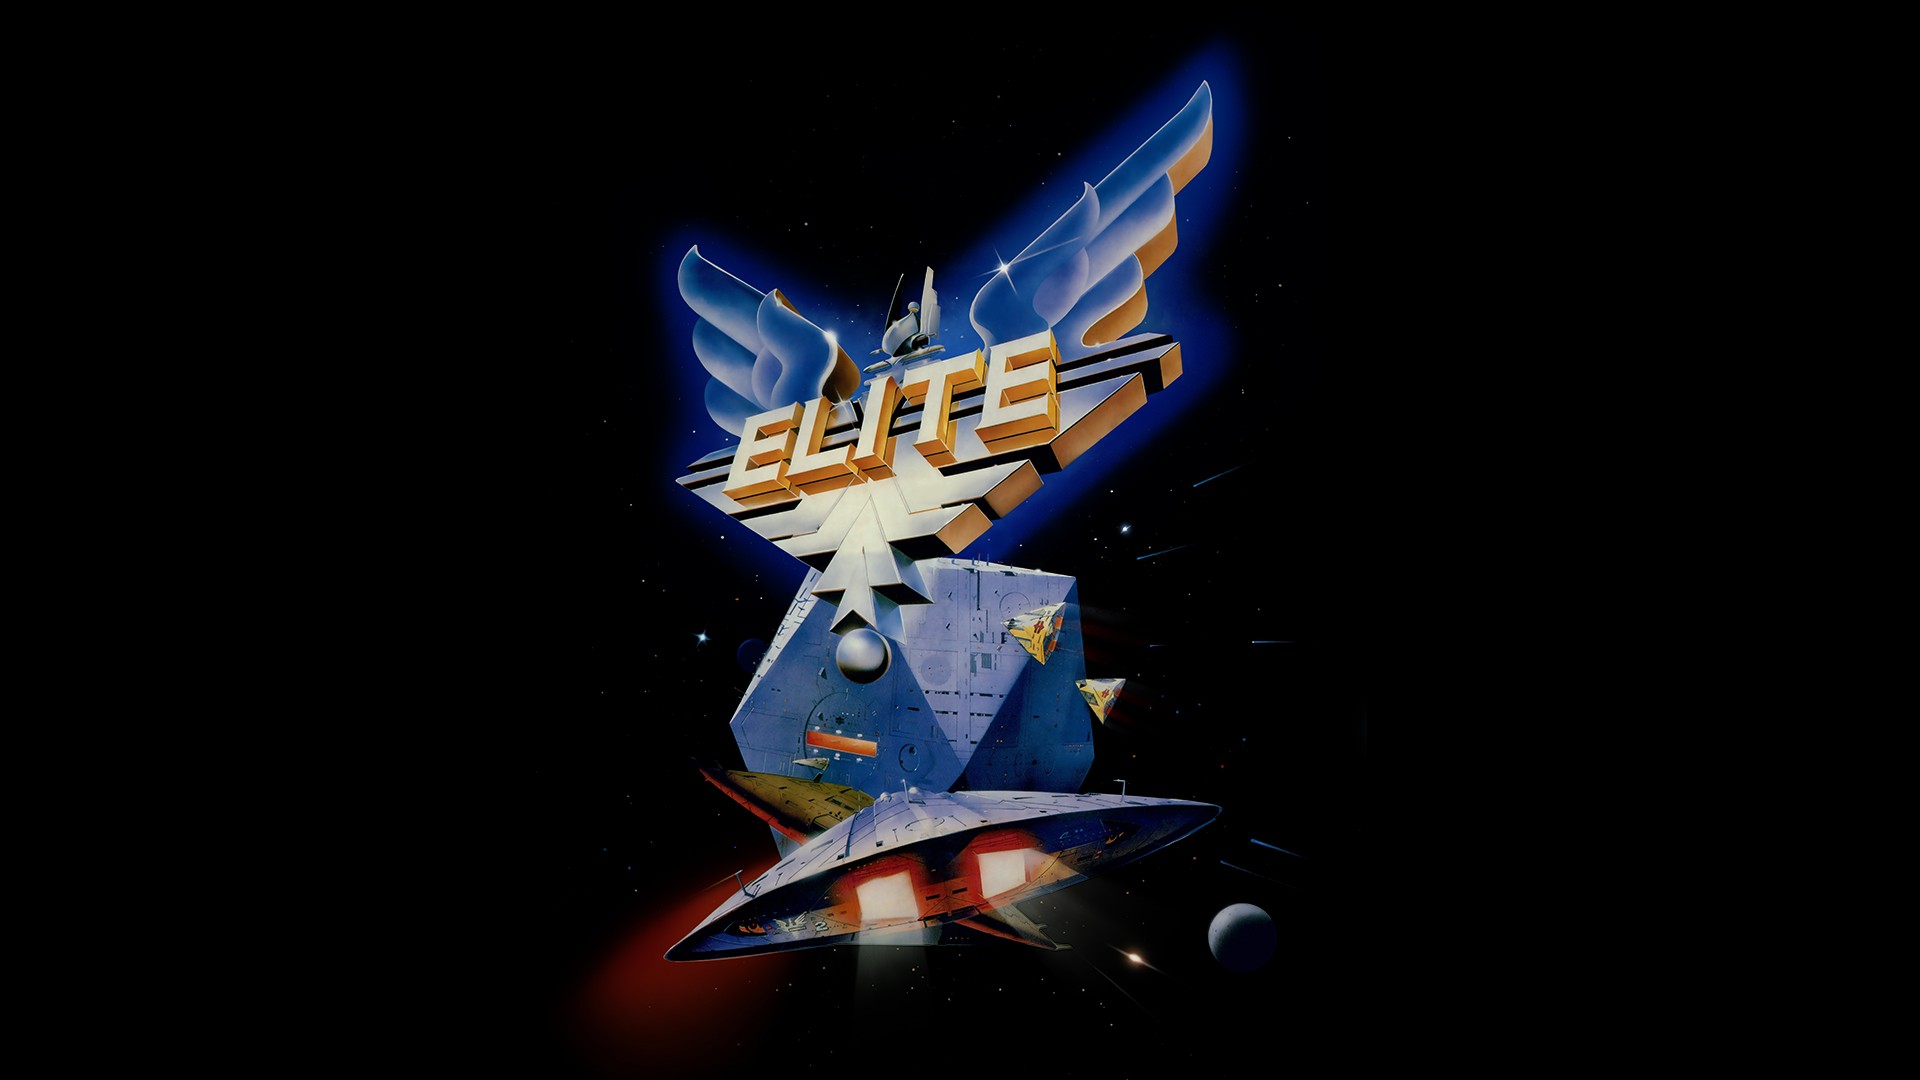 Elite (1984) - Elite Dangerous - Games - Frontier Store